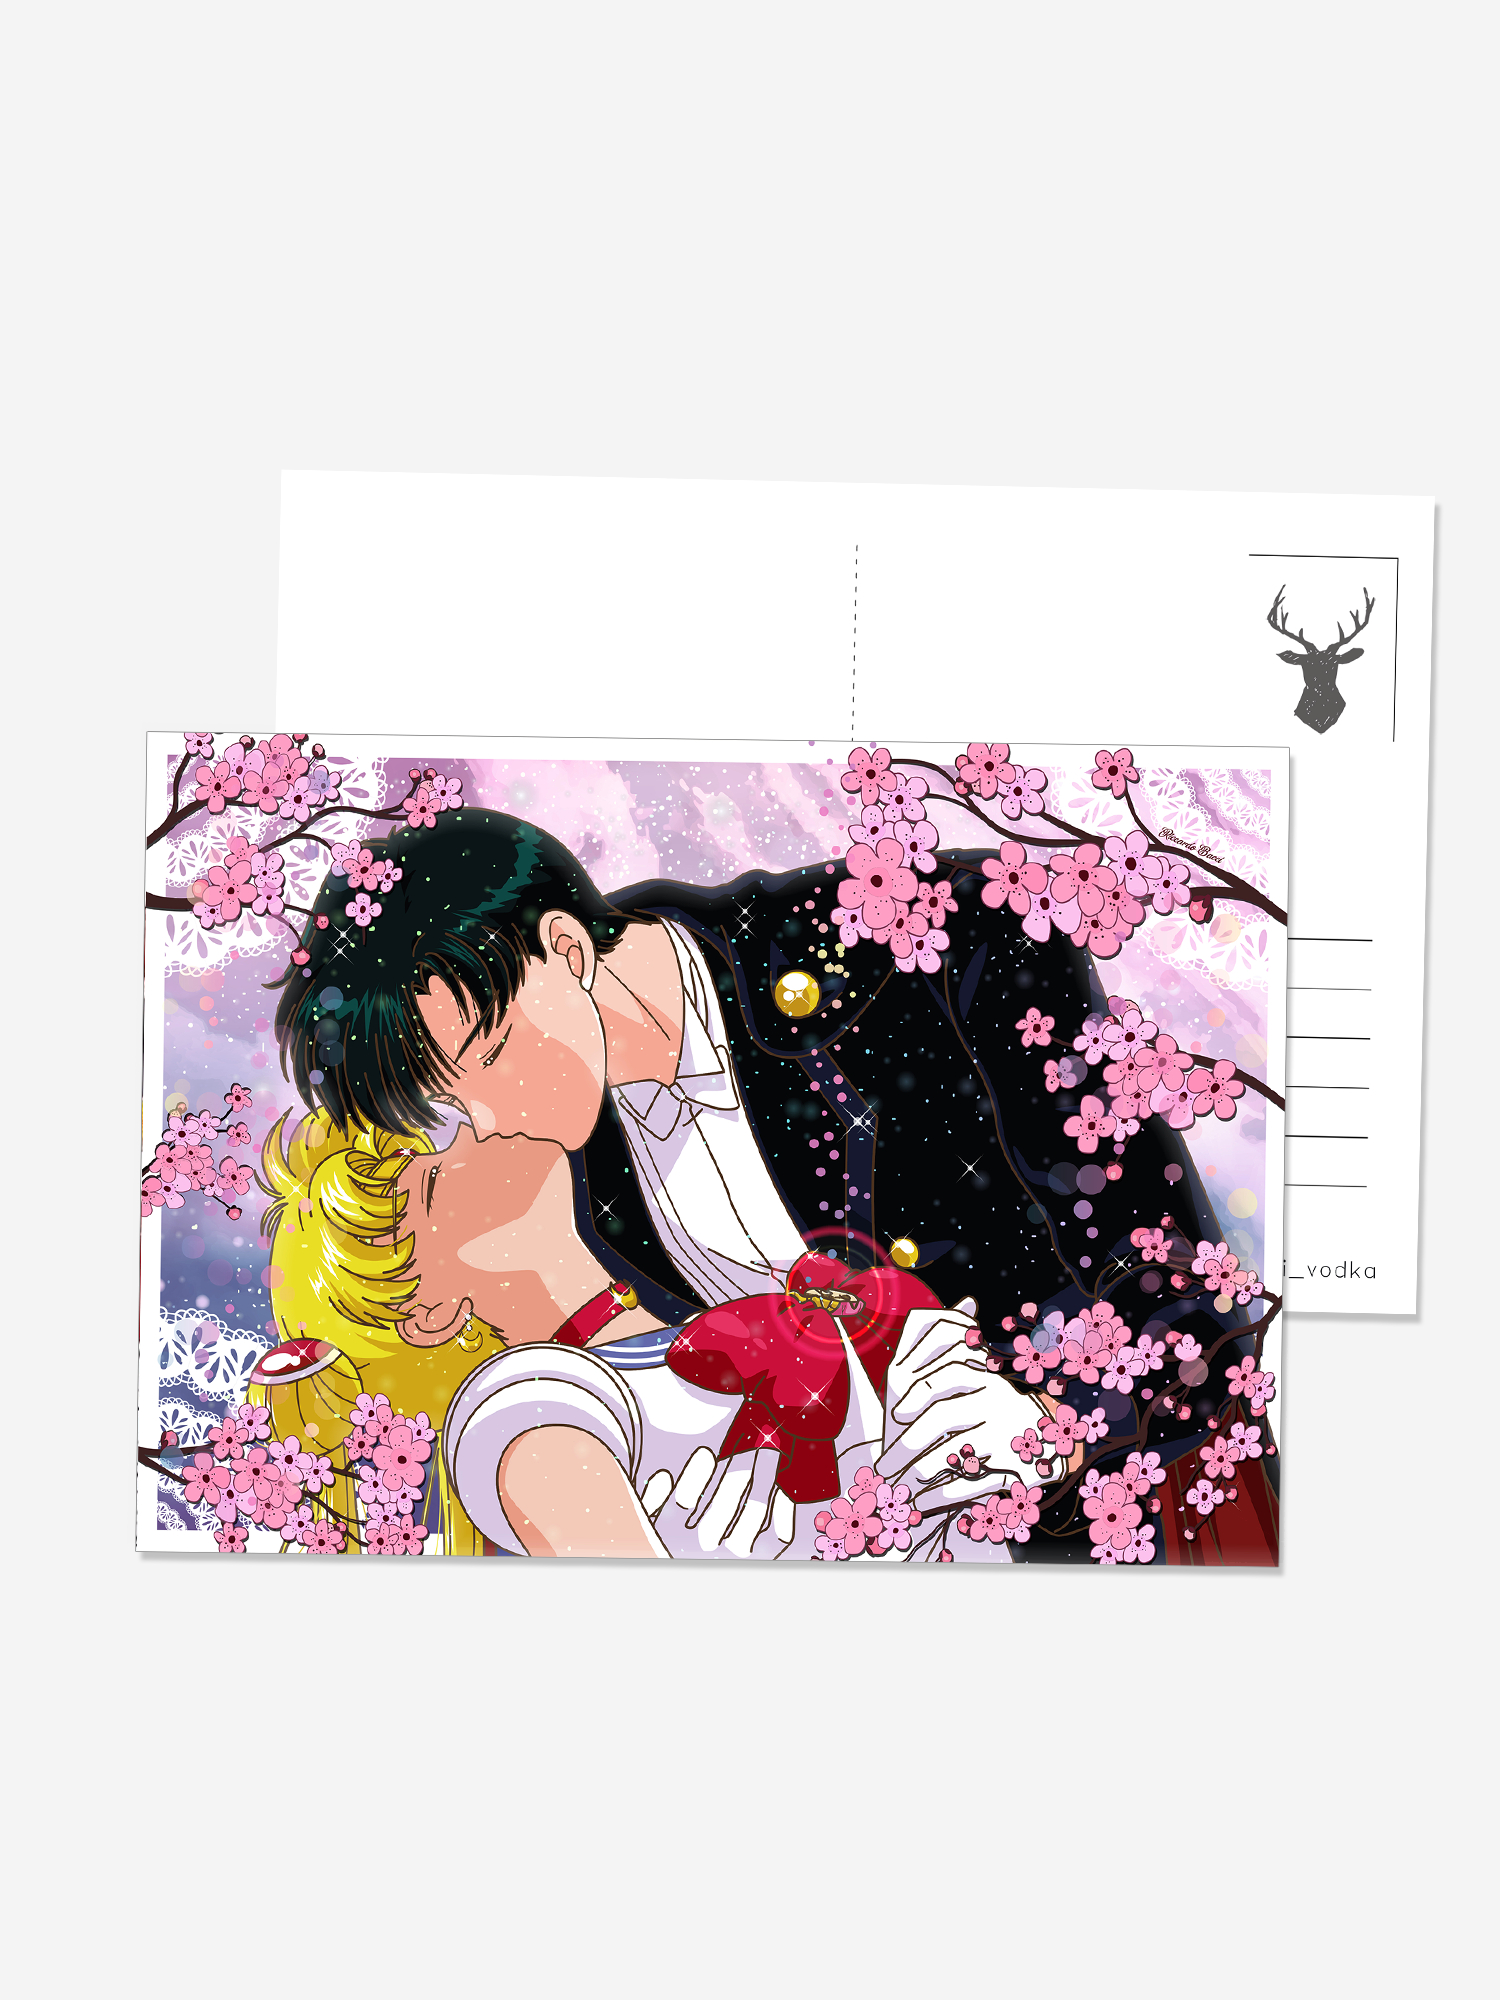 Купить аниме открытки в интернет-магазине Няпи